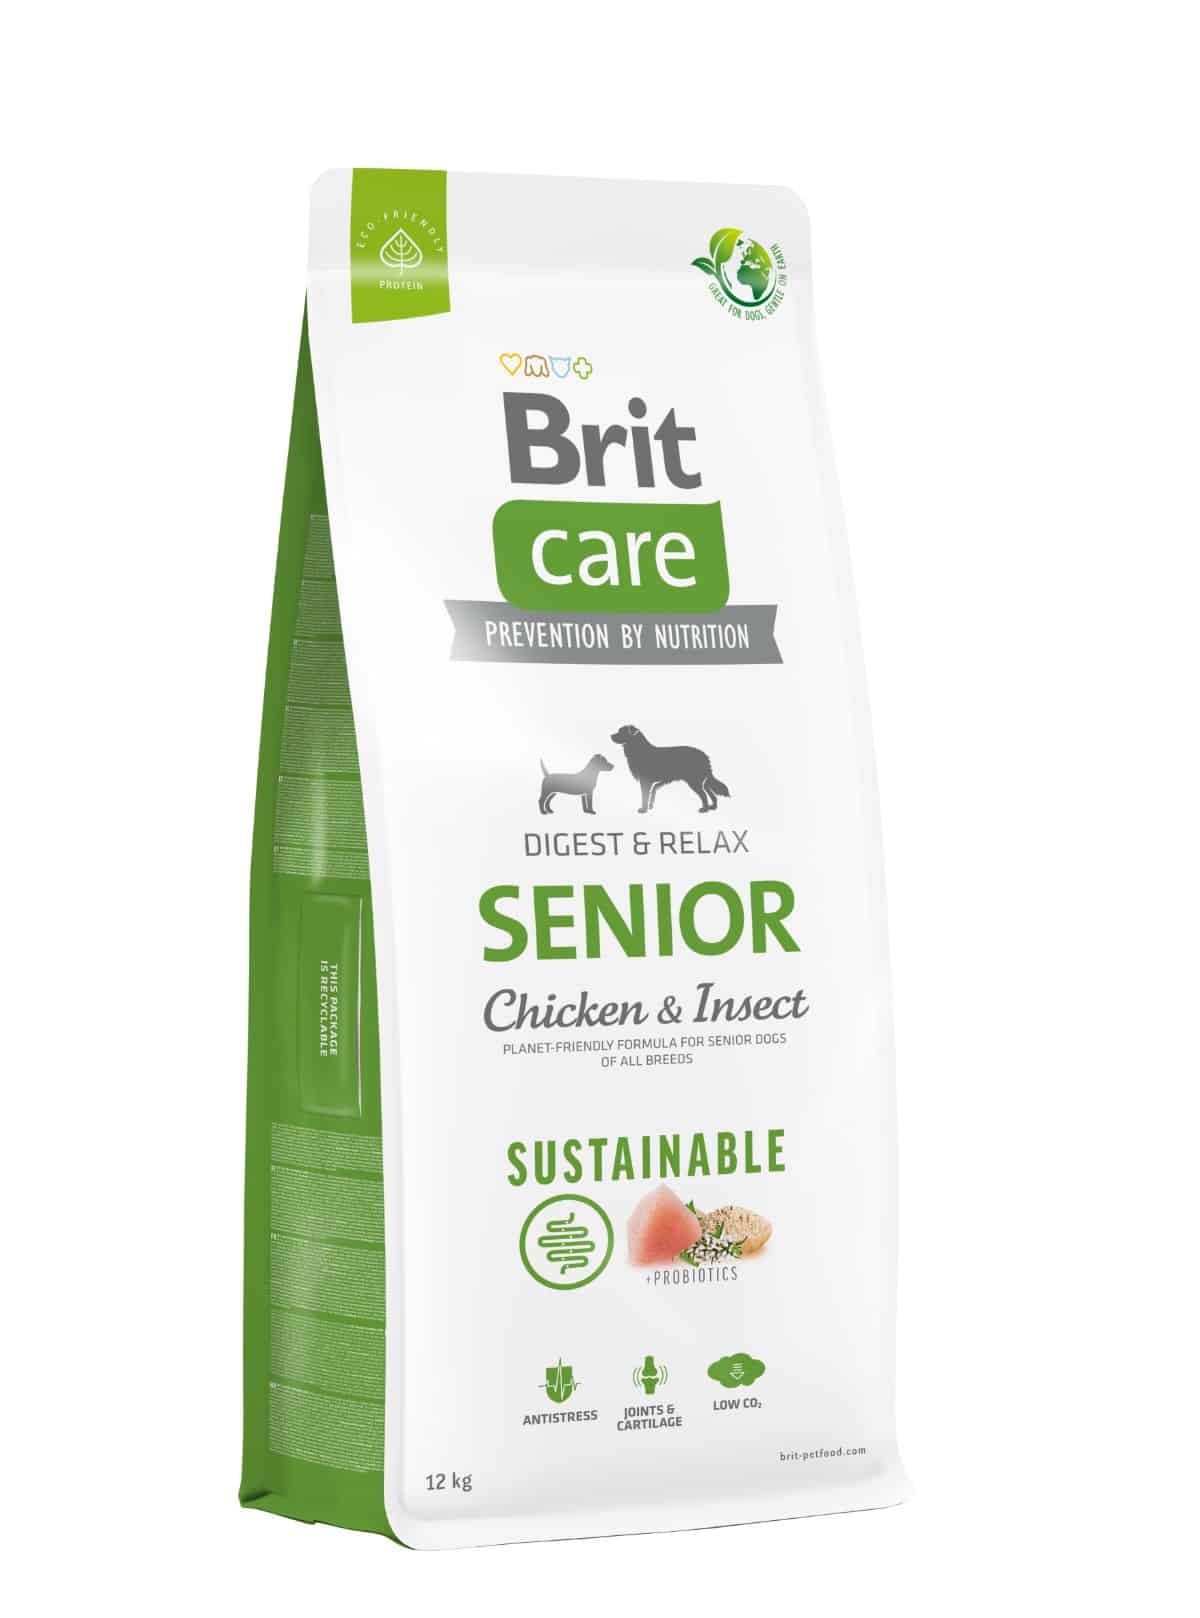 Brit Care – Sustainable – Senior-2